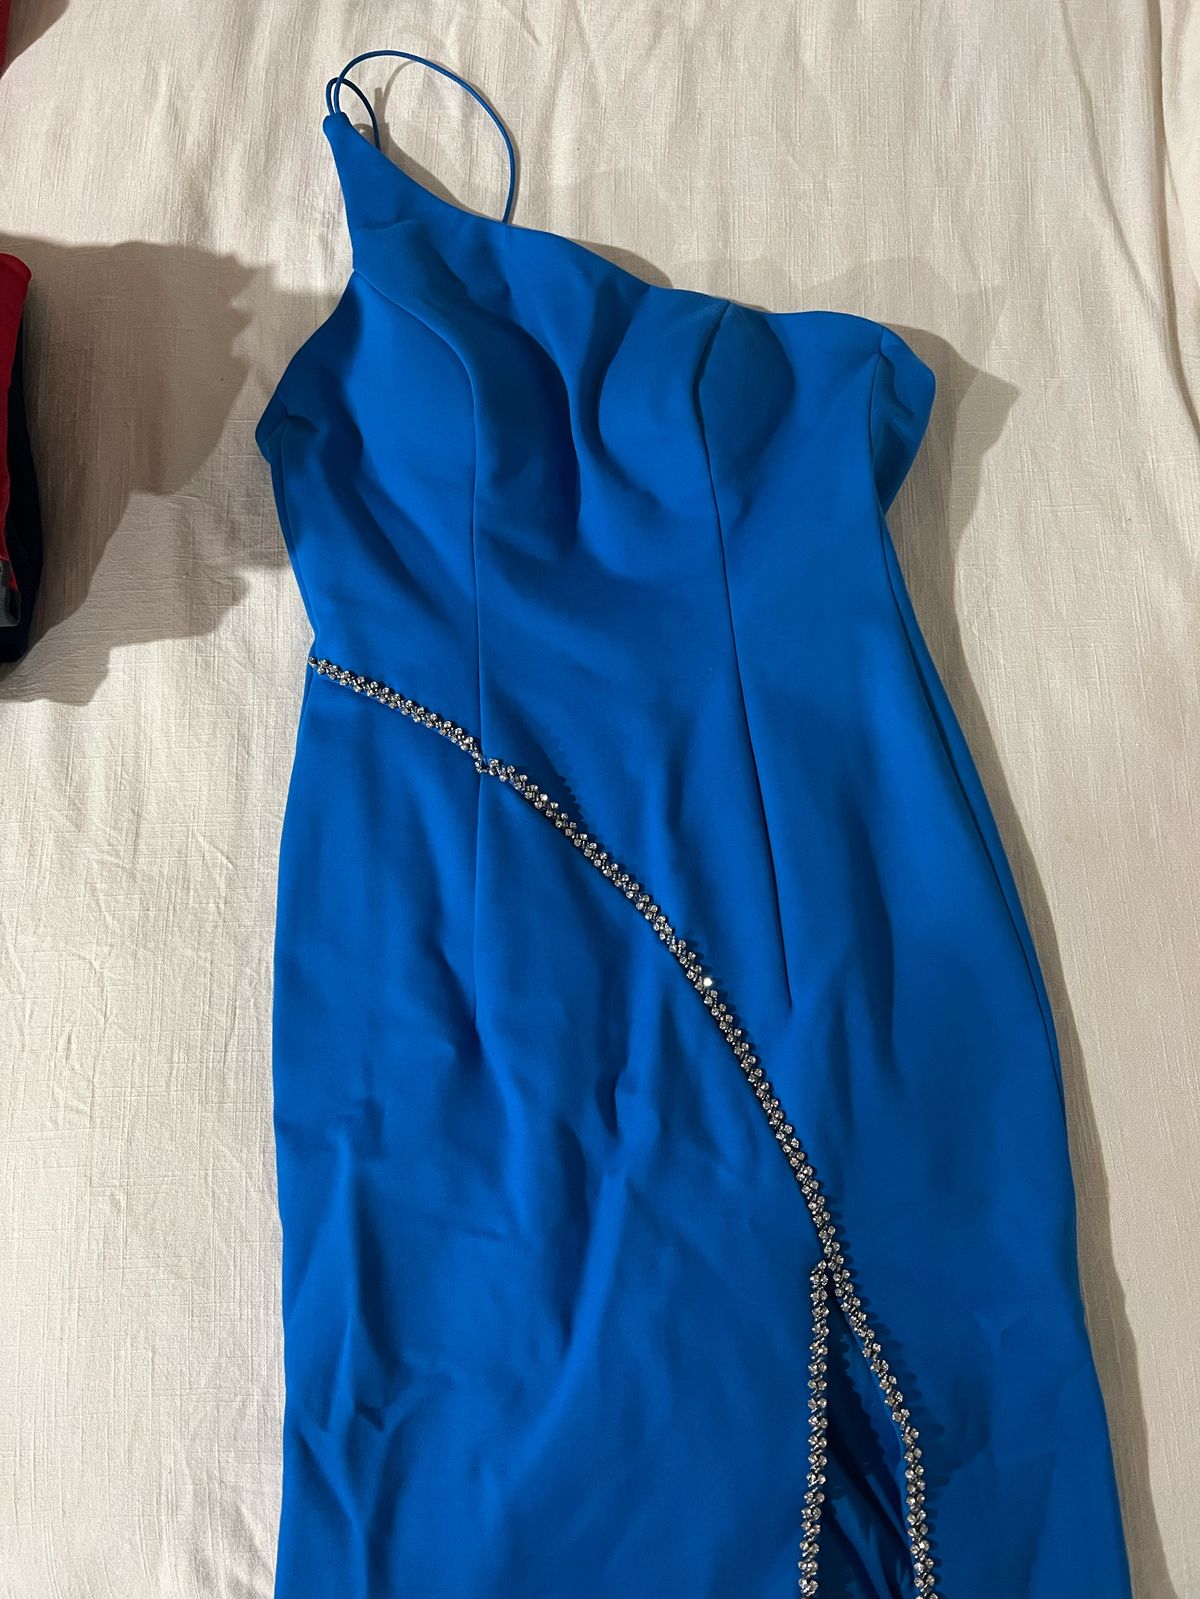 Sherri Hill Size 4 Prom One Shoulder Royal Blue Side Slit Dress on Queenly